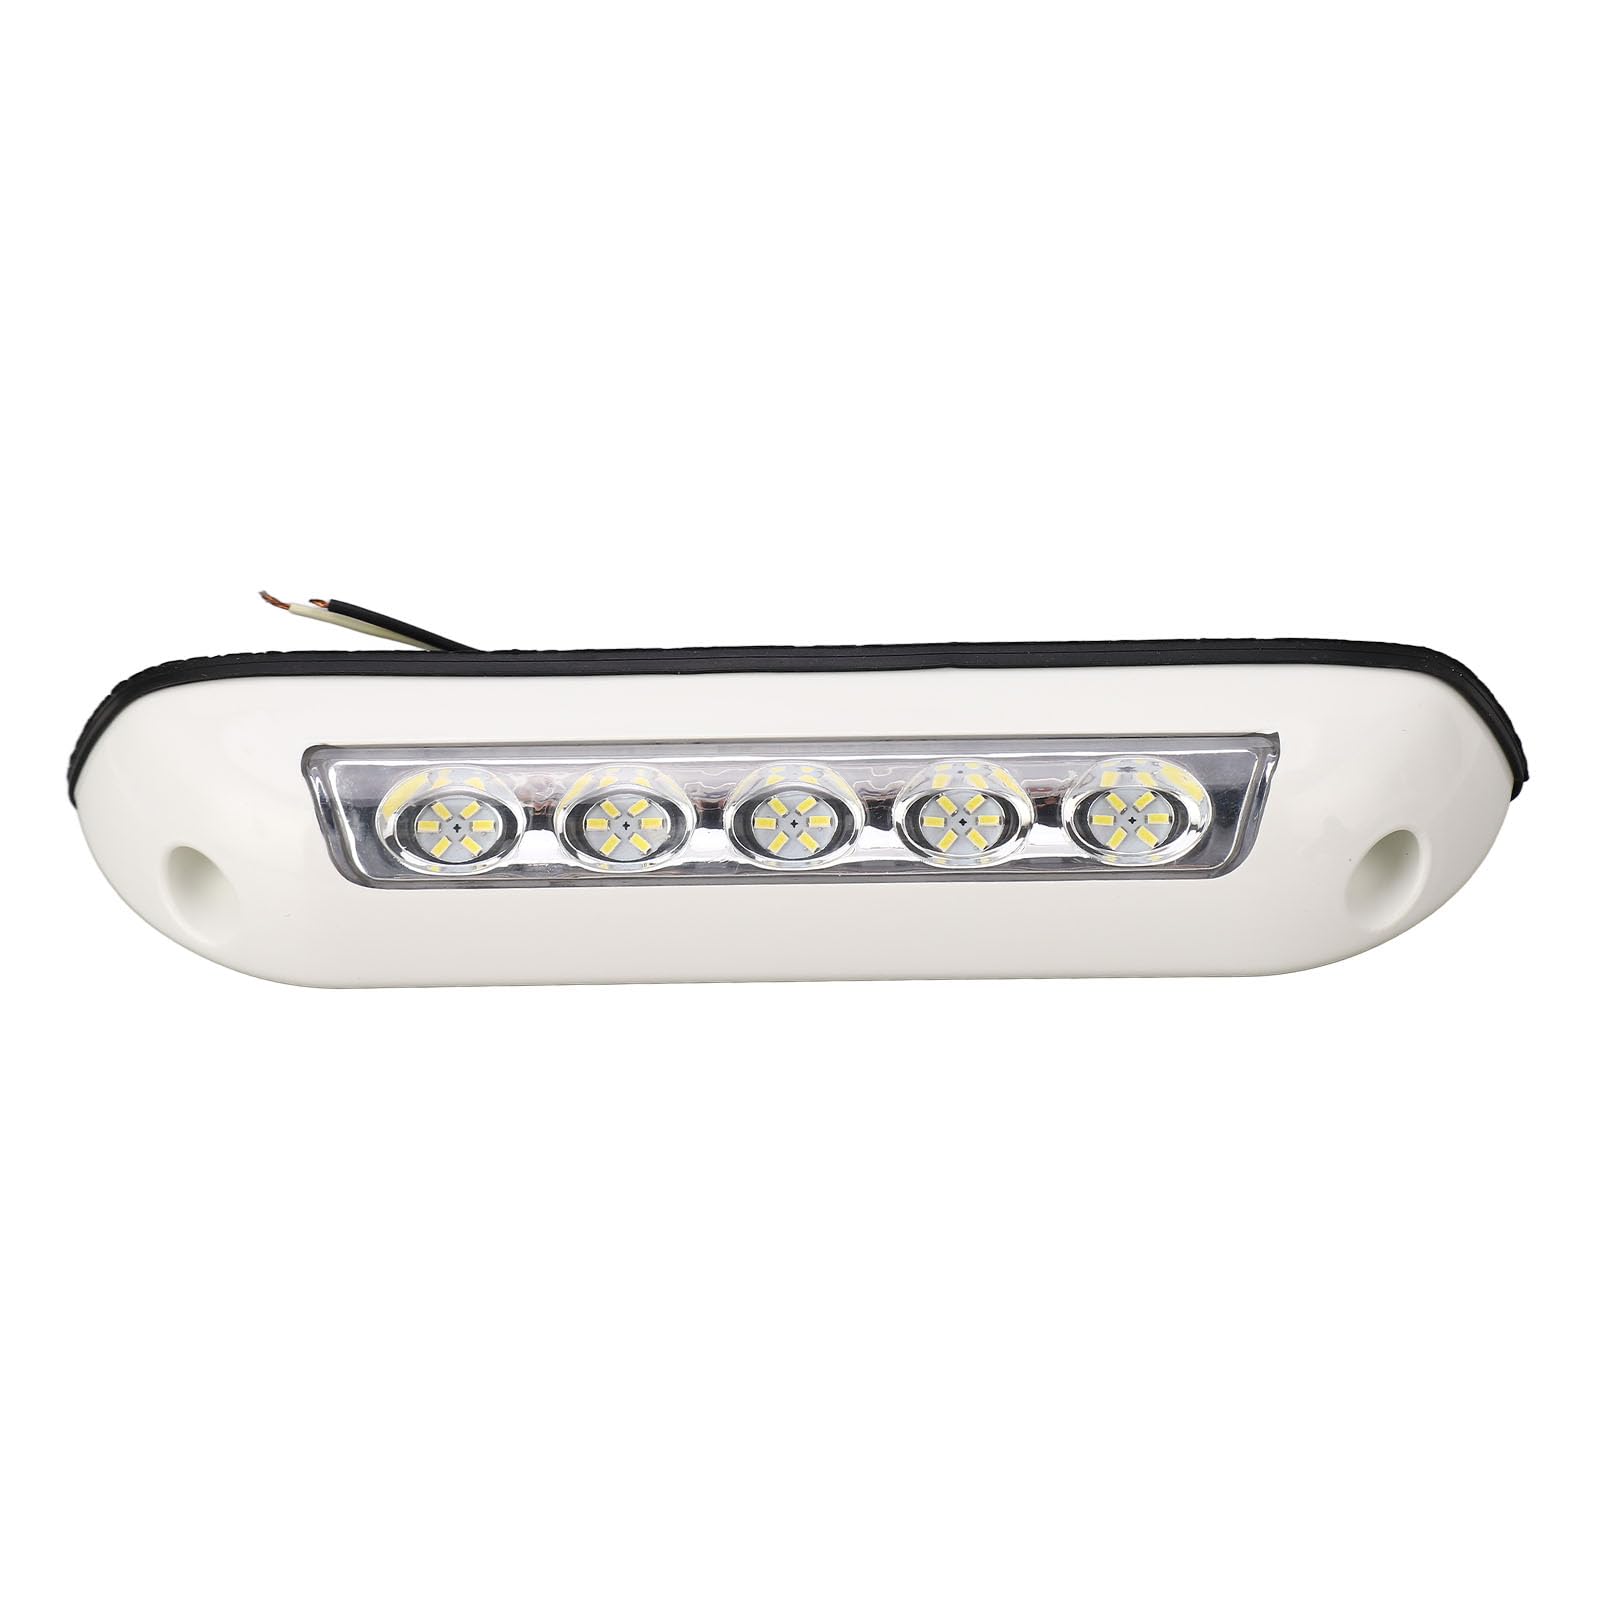 Garosa Wohnmobil-LED-Veranda-Licht, Wohnmobil-Vorzelt-Lichtleiste, 30 LED-Perlen, Wasserdicht, 12 V, 24 V Gleichstrom, für Beleuchtung, 20,3 cm, Außenbeleuchtung von Garosa